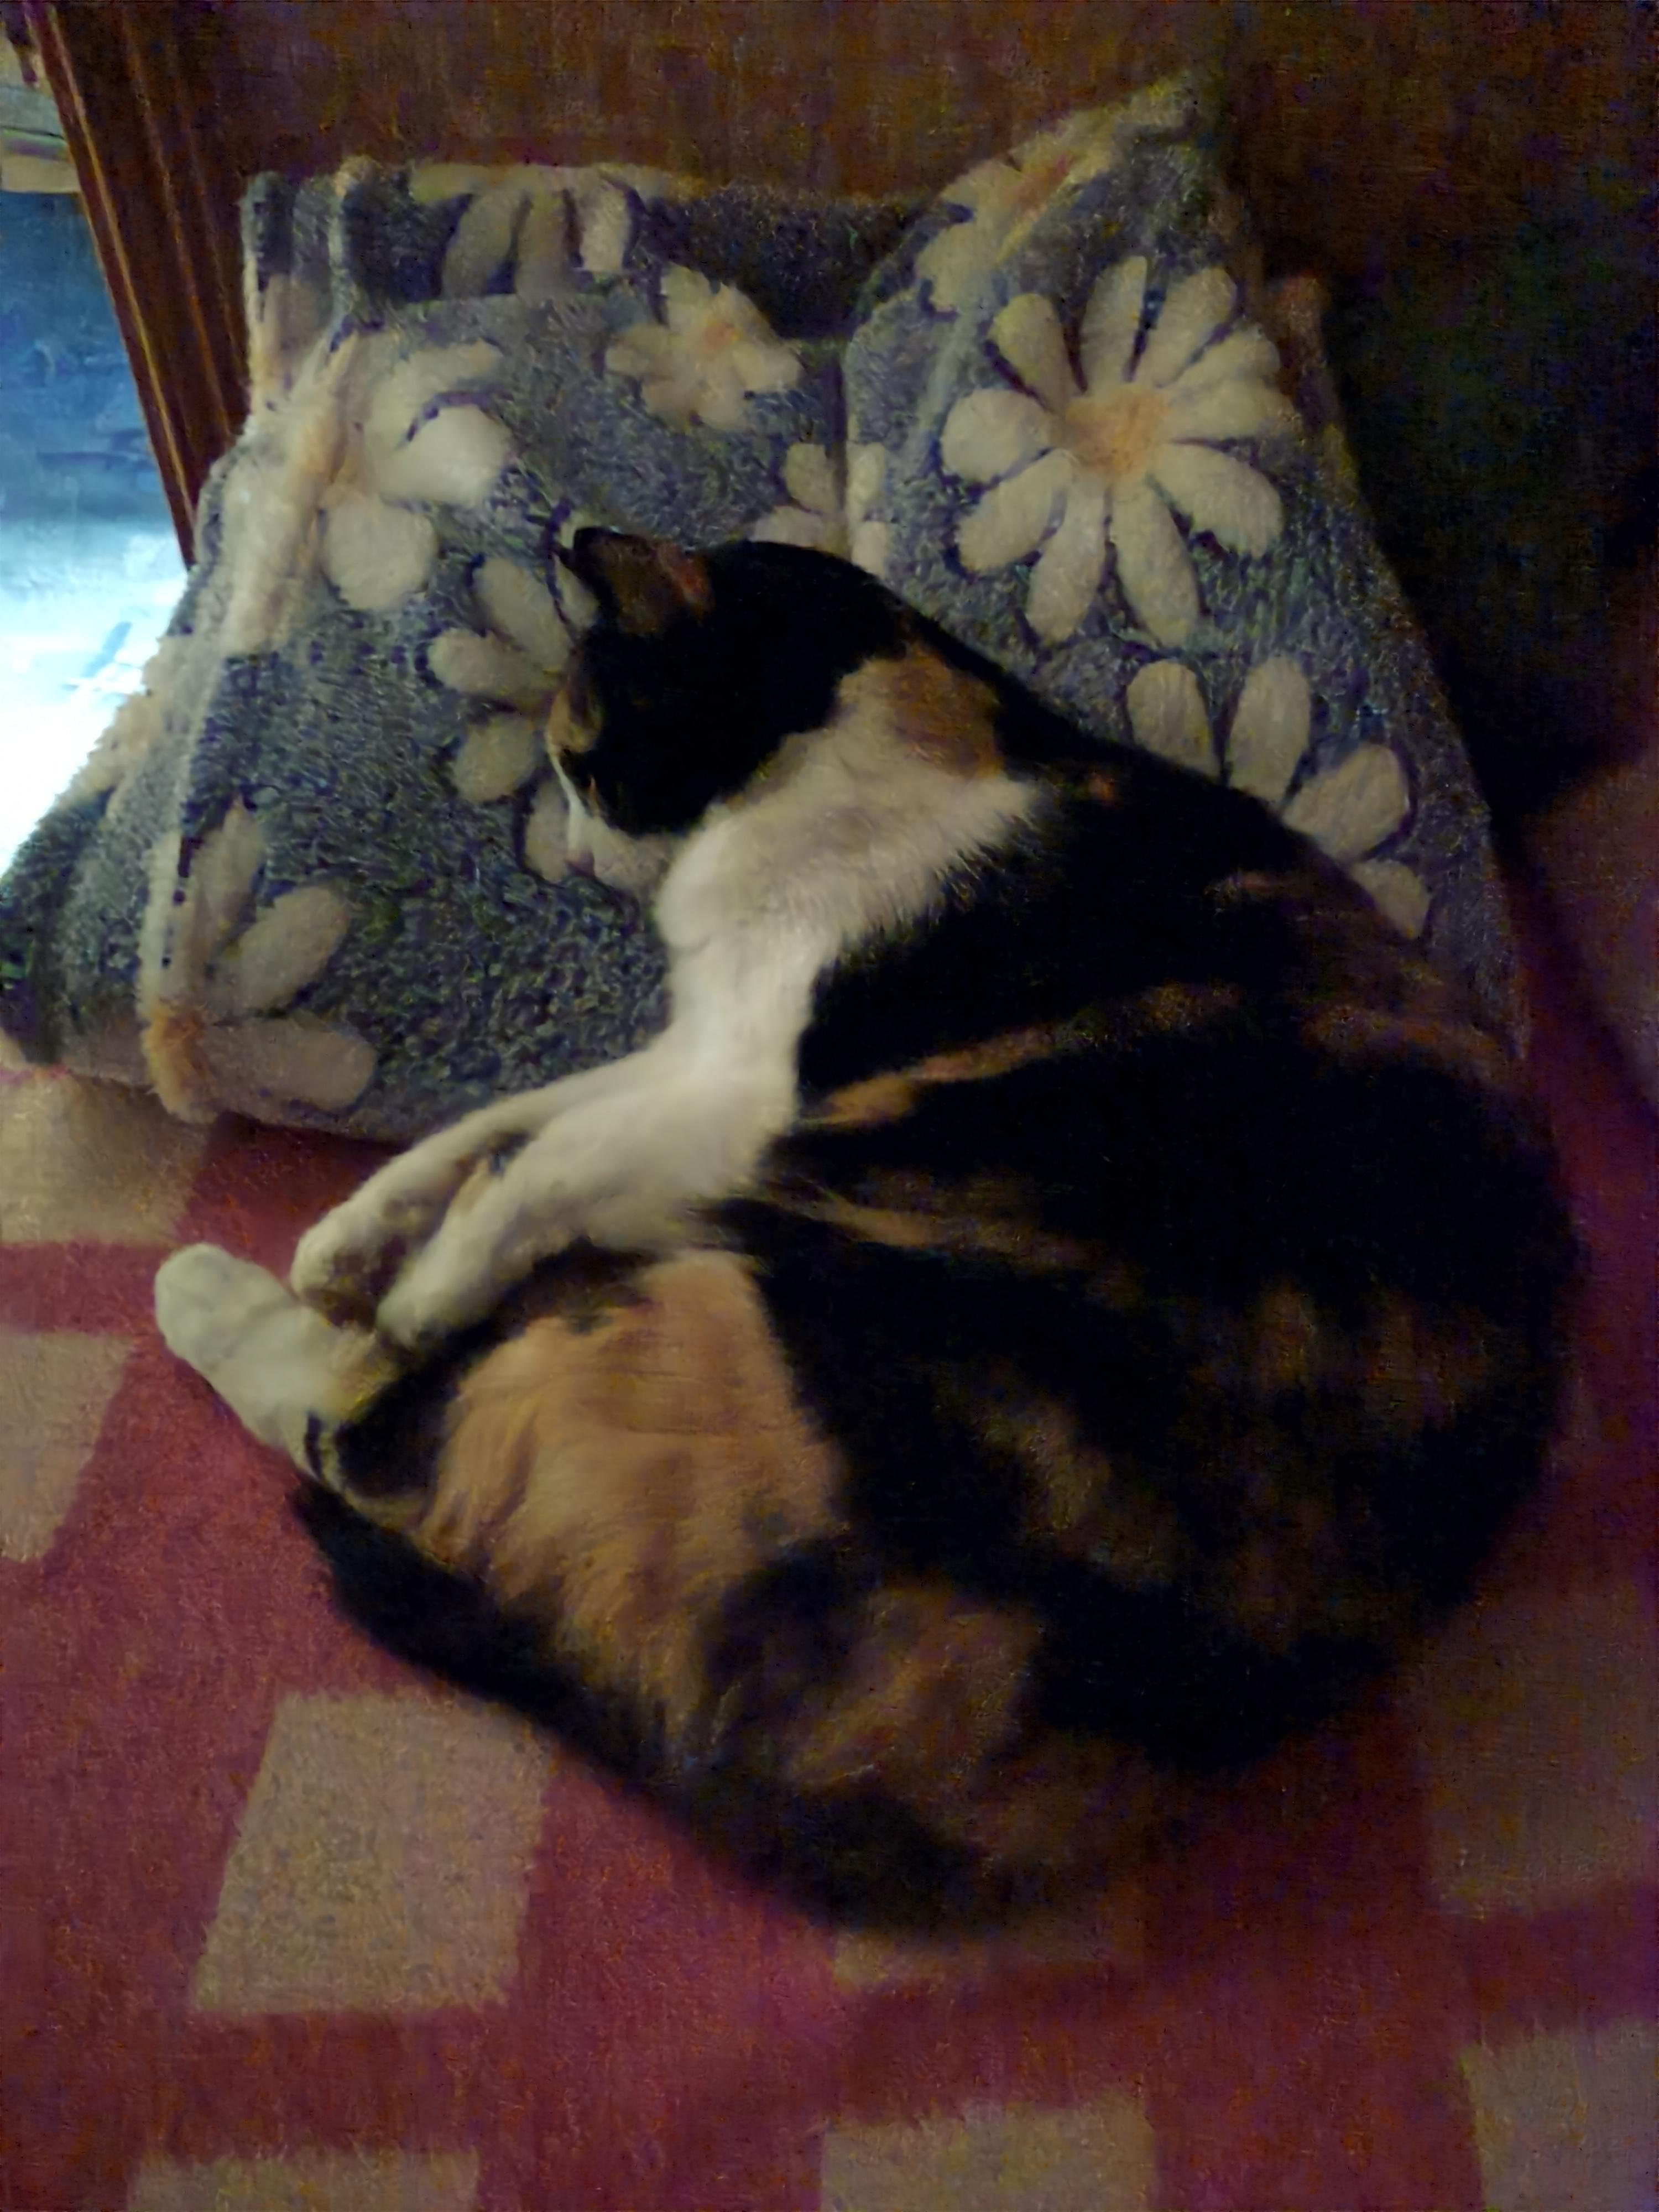 Кошка дрожит во сне, бесплатная консультация ветеринара - вопрос задан  пользователем sksyusha sks про питомца: кошка Без породы (домашняя кошка)